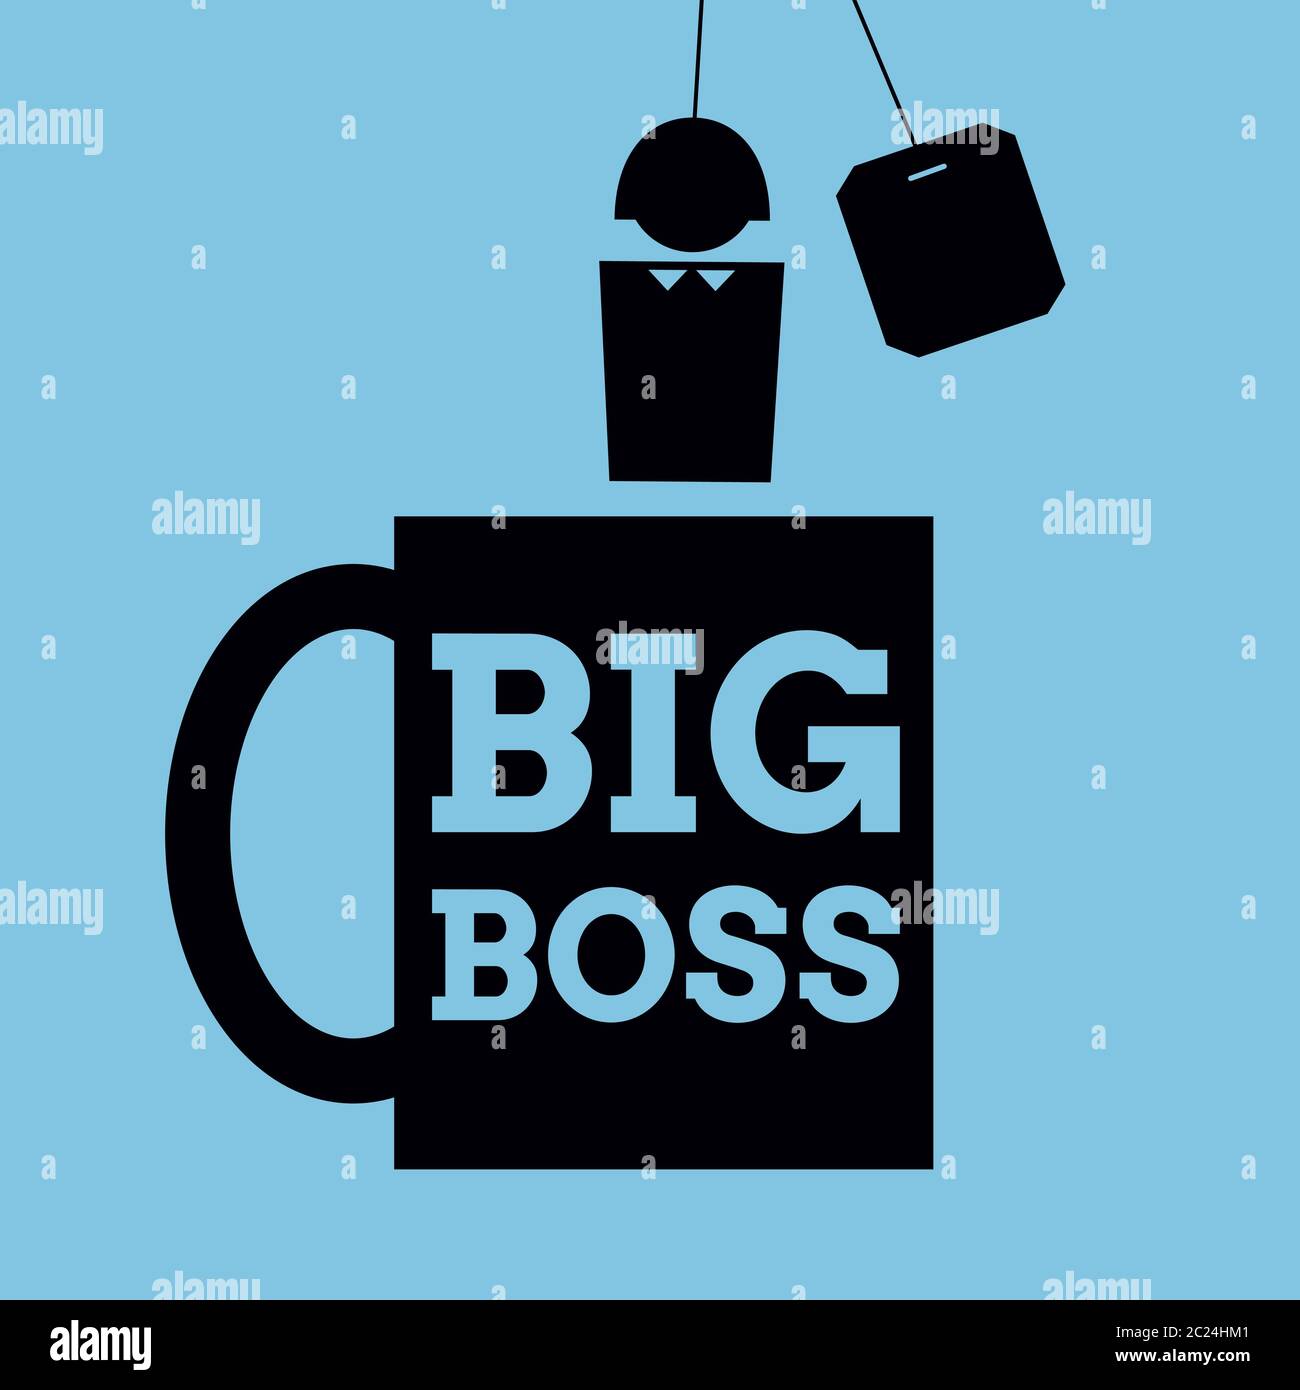 Illustration simplifiée vectorielle. Icône d'une tasse avec les mots « Big Boss » écrits dessus et une personne au lieu de teabag. Format carré. Noir sur bleu. Illustration de Vecteur